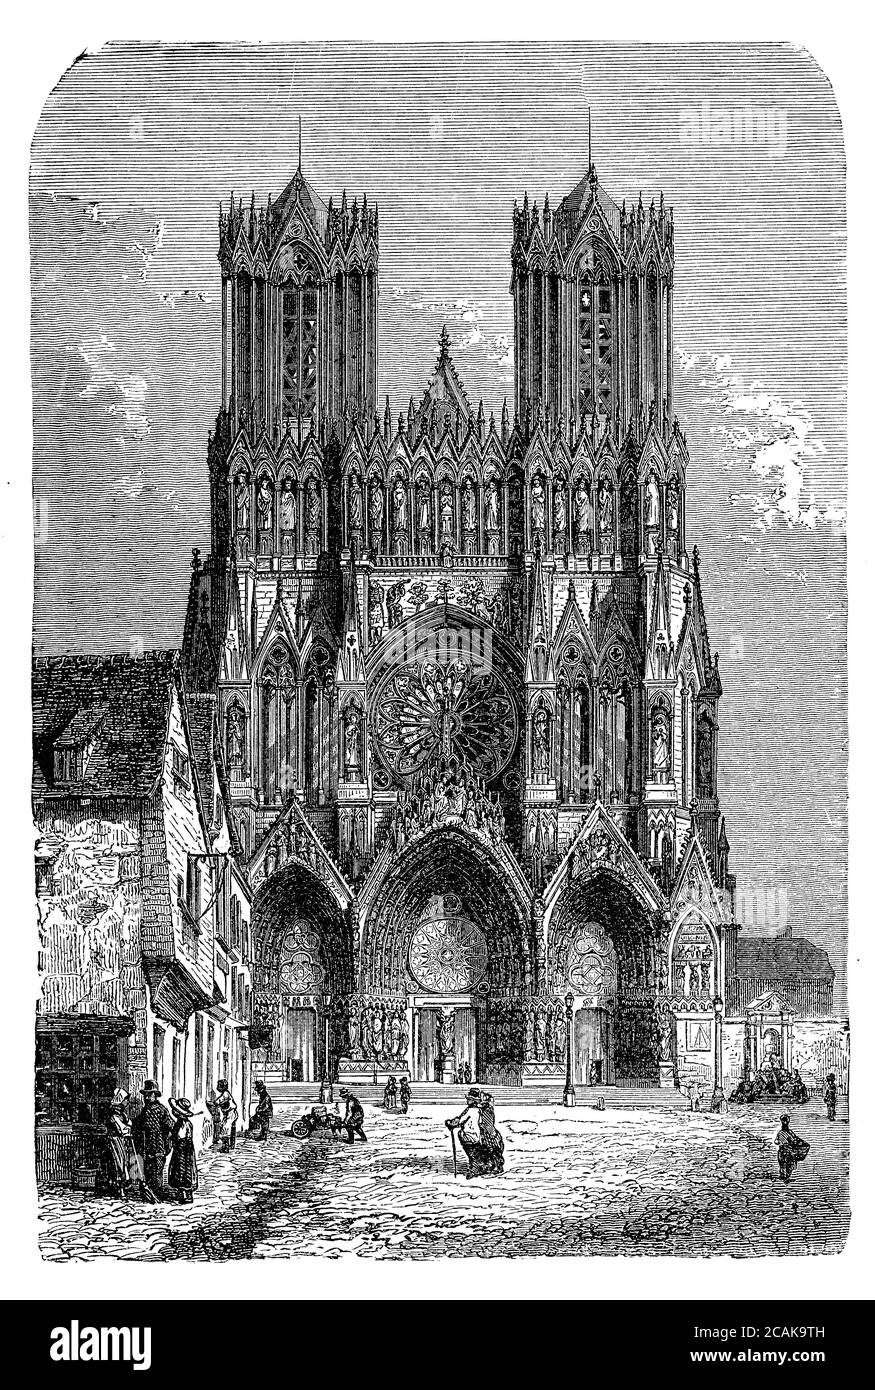 Kathedrale Notre-Dame in Reims, Frankreich, wo die Könige von Frankreich gekrönt wurden; in karolingischer Zeit erbaut und im XII Jahrhundert im französischen gotischen Stil mit zwei hohen Türmen, Statuen und einem Rosenfenster vollendet Stockfoto